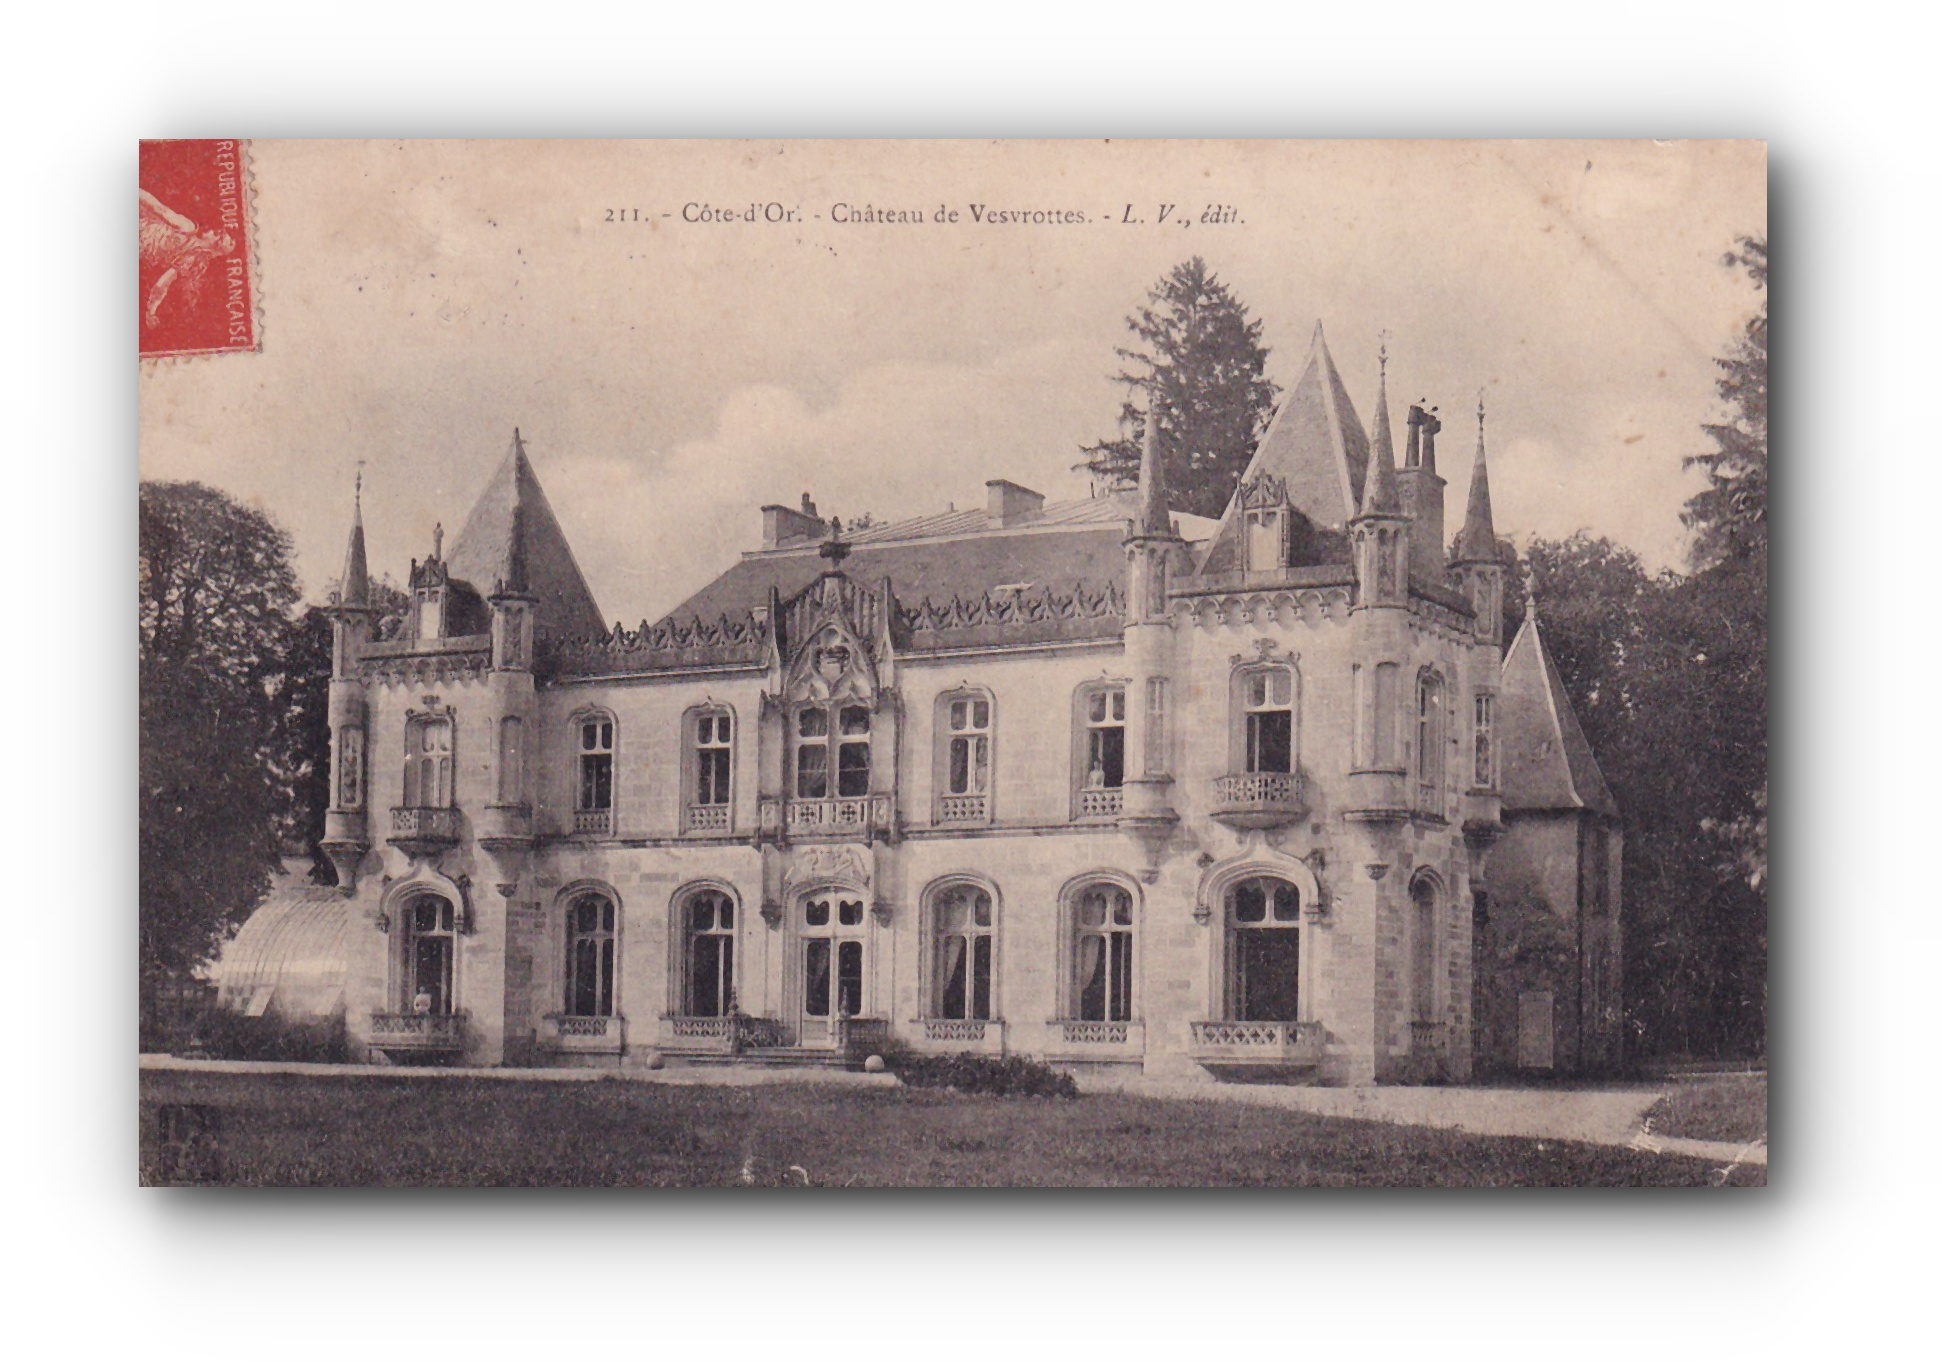 - Château de VESVROTTES - Côte d'Or  - 29.07.1907 -